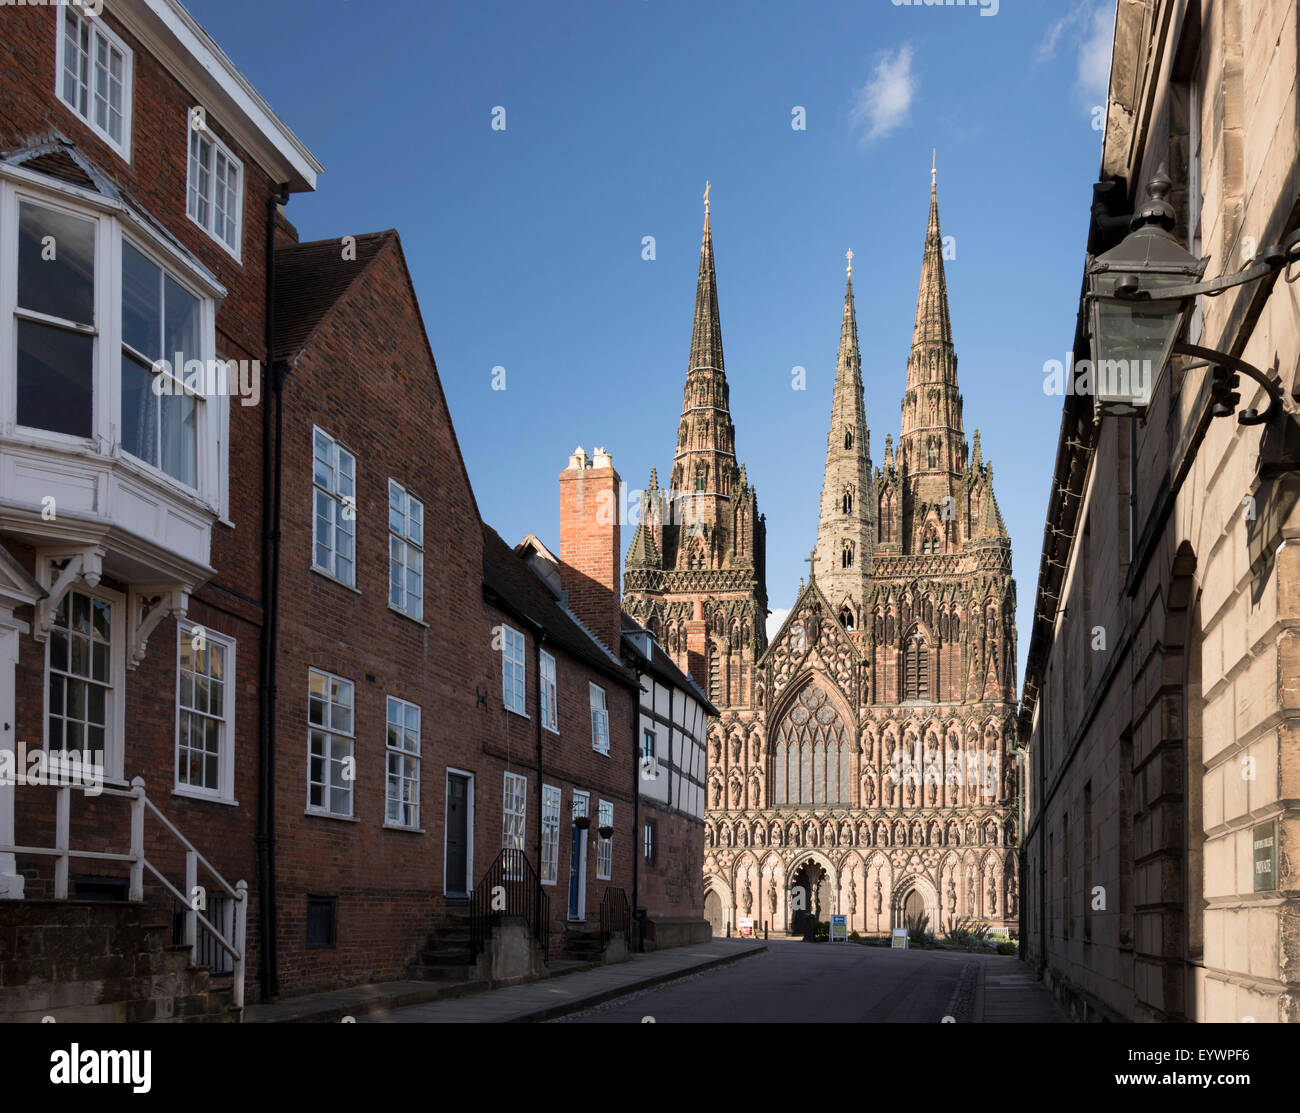 Avant de l'ouest, la cathédrale de Lichfield, Lichfield, Staffordshire, Angleterre, Royaume-Uni, Europe Banque D'Images